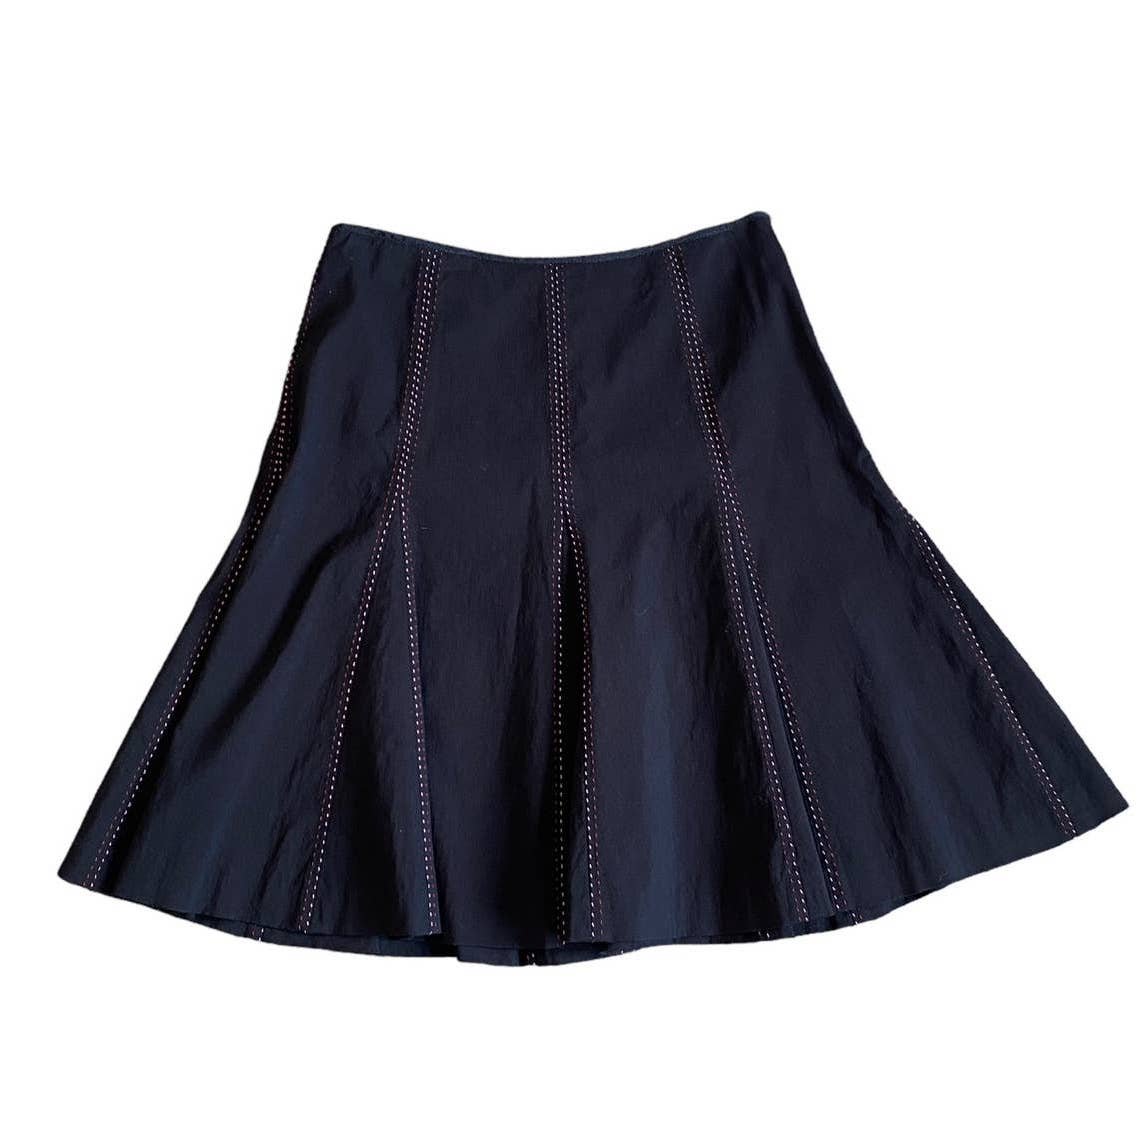 Custom Antrho Elevenses Black Gore Flare Skirt Size 4 A